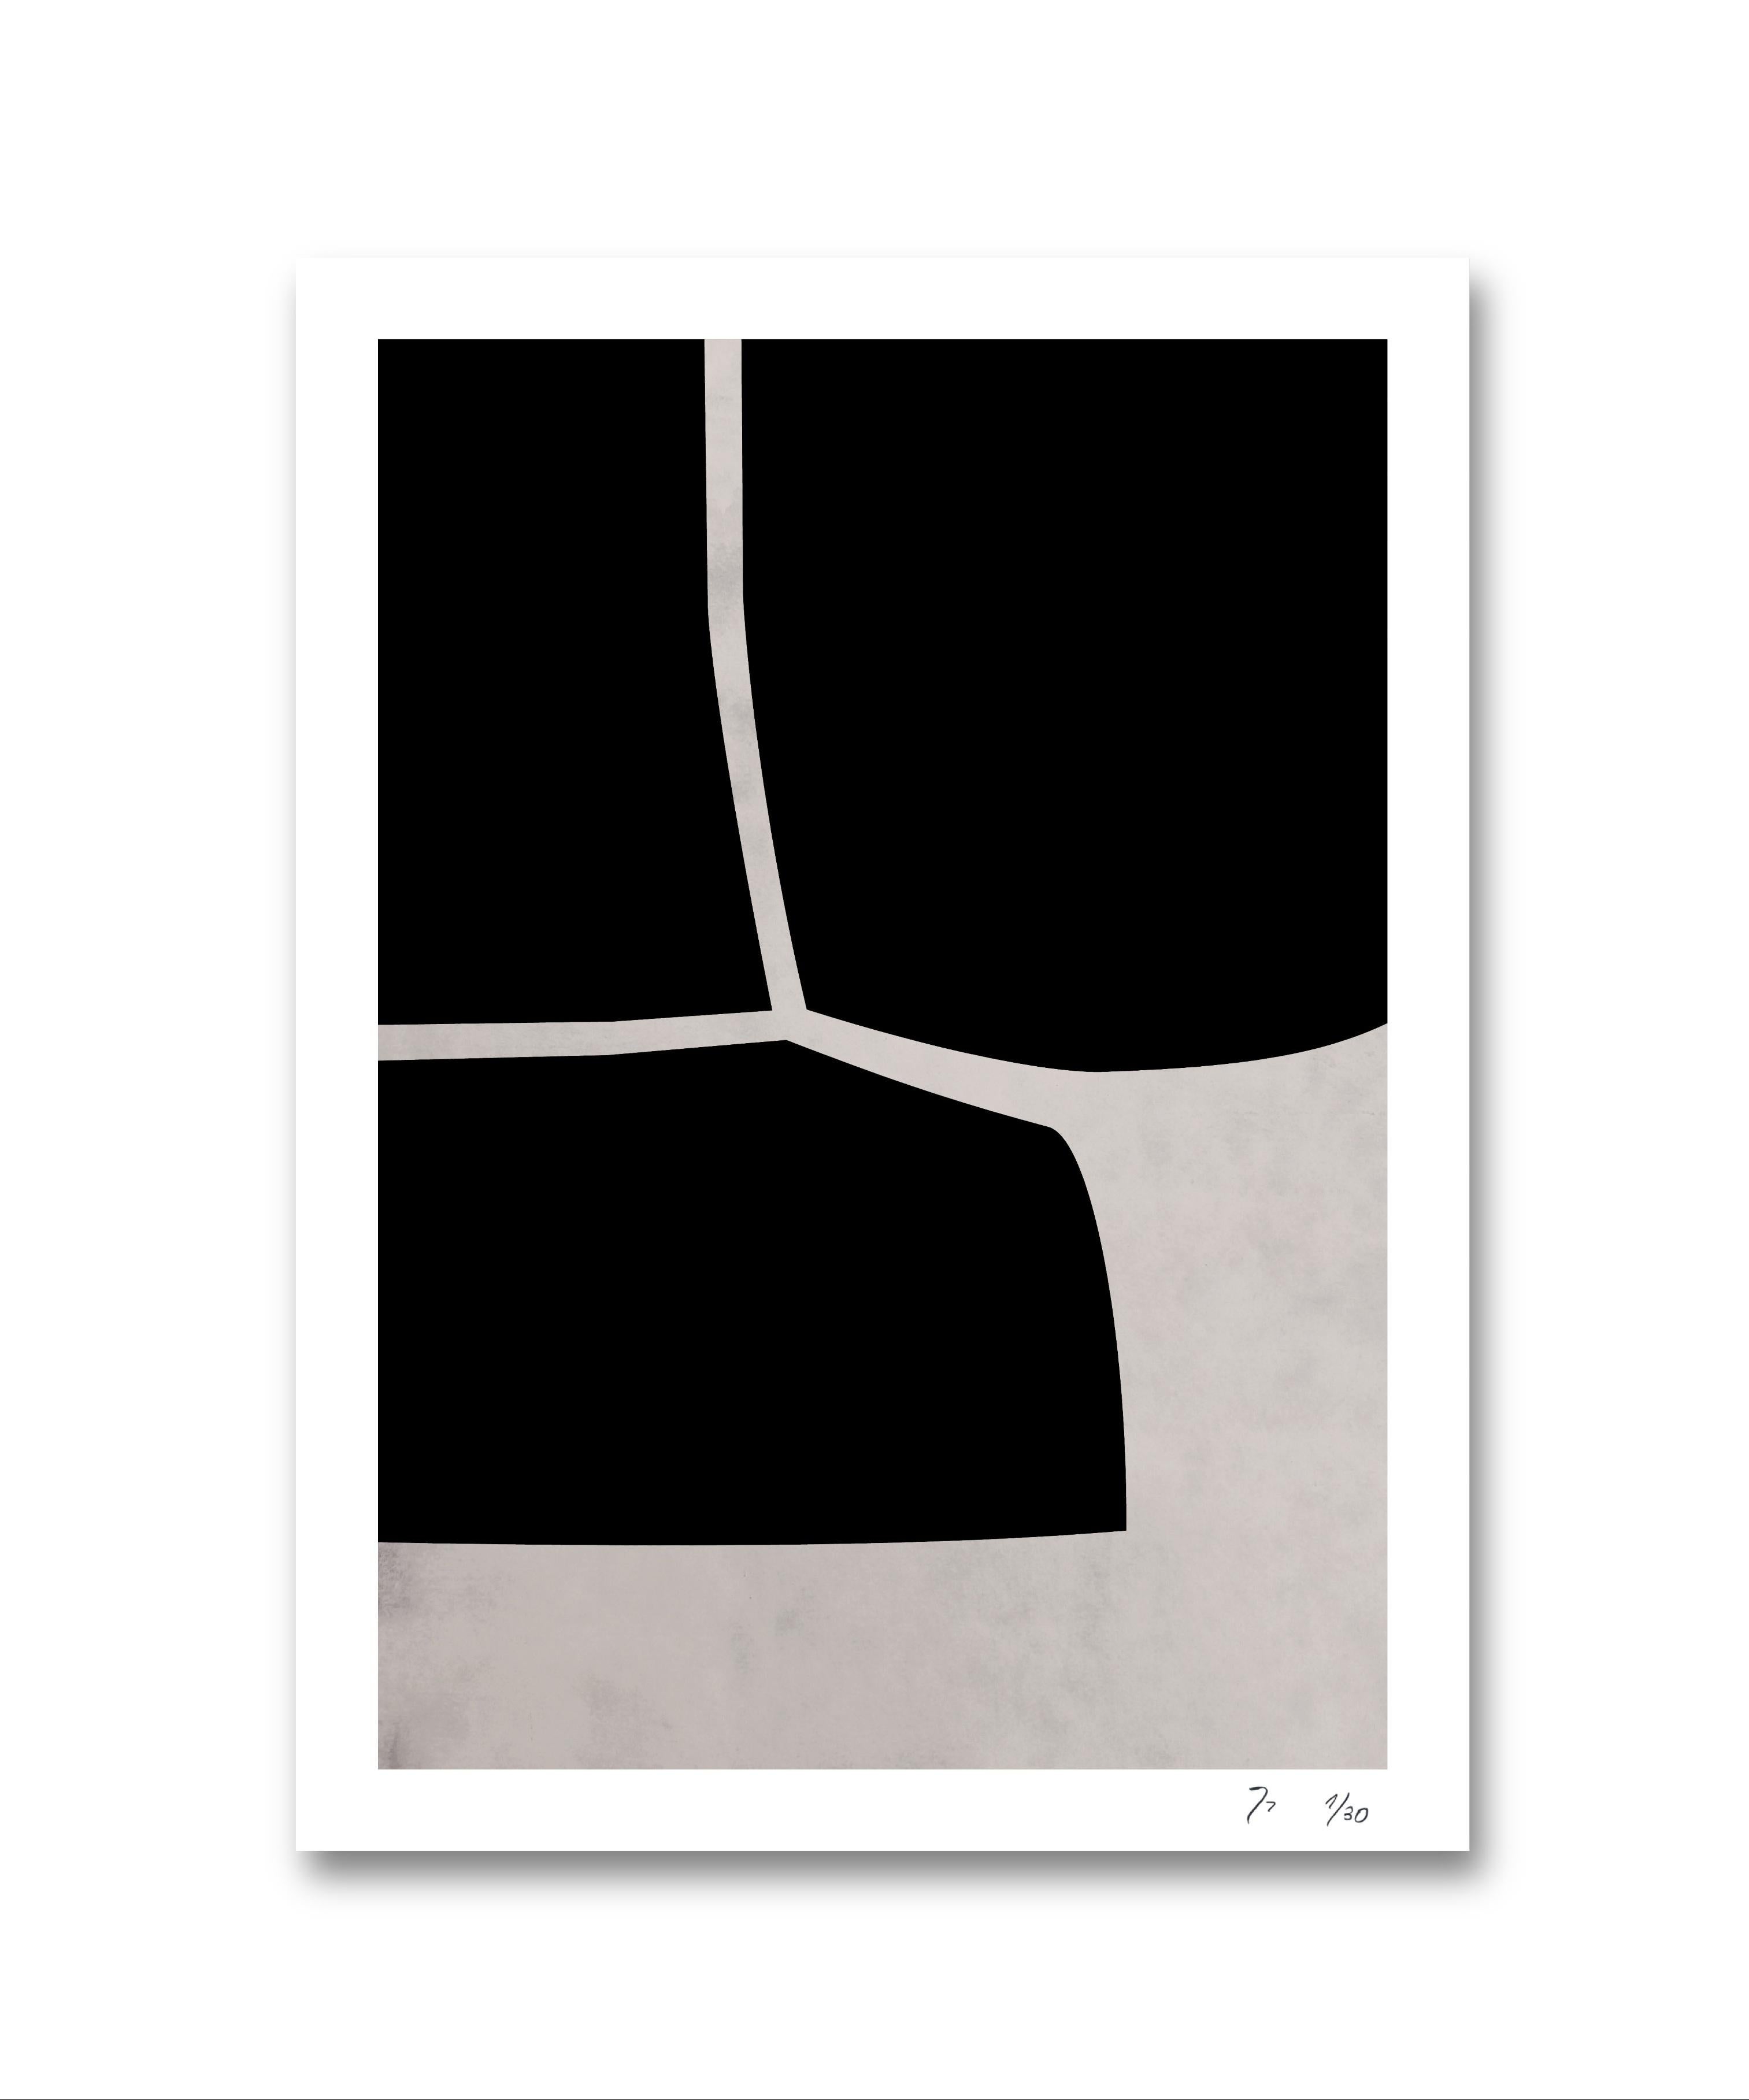 SERIES 'B' - Abstract Print by Jorge Reyes Zepeda